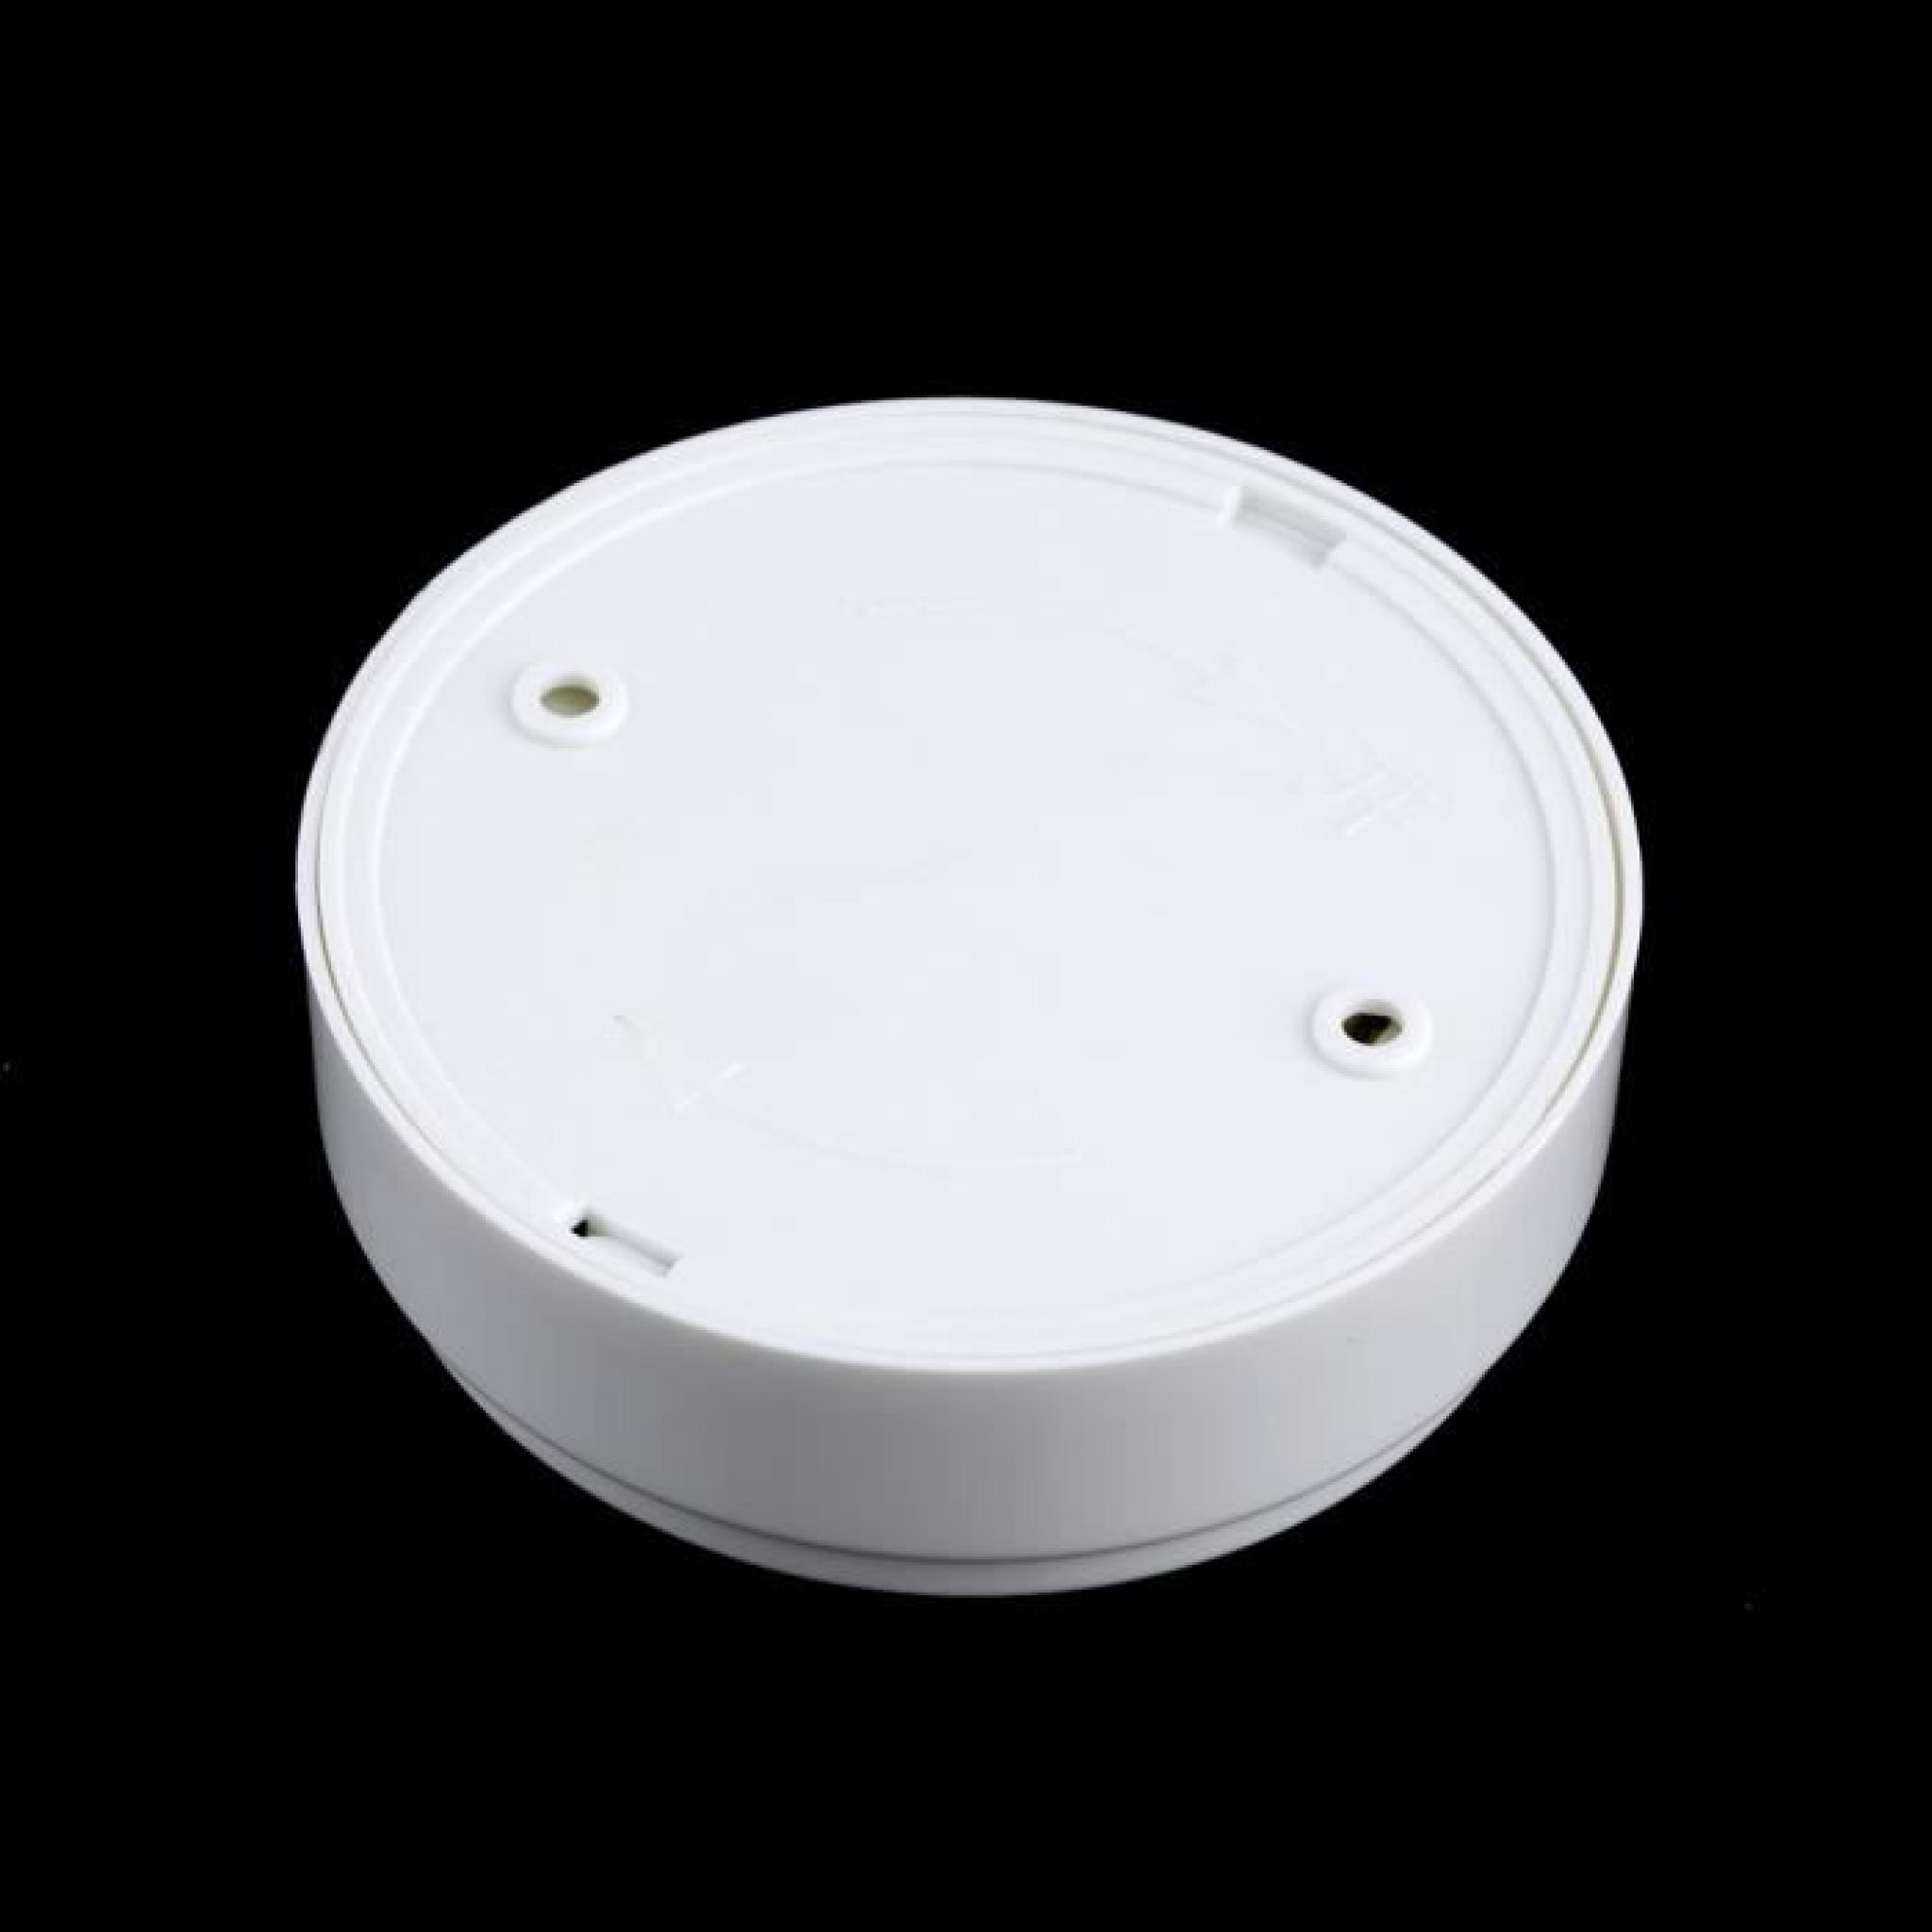 Mode 6 LED capteur PIR Auto IR sans fil infrarouge détecteur de mouvement Lampe pas cher